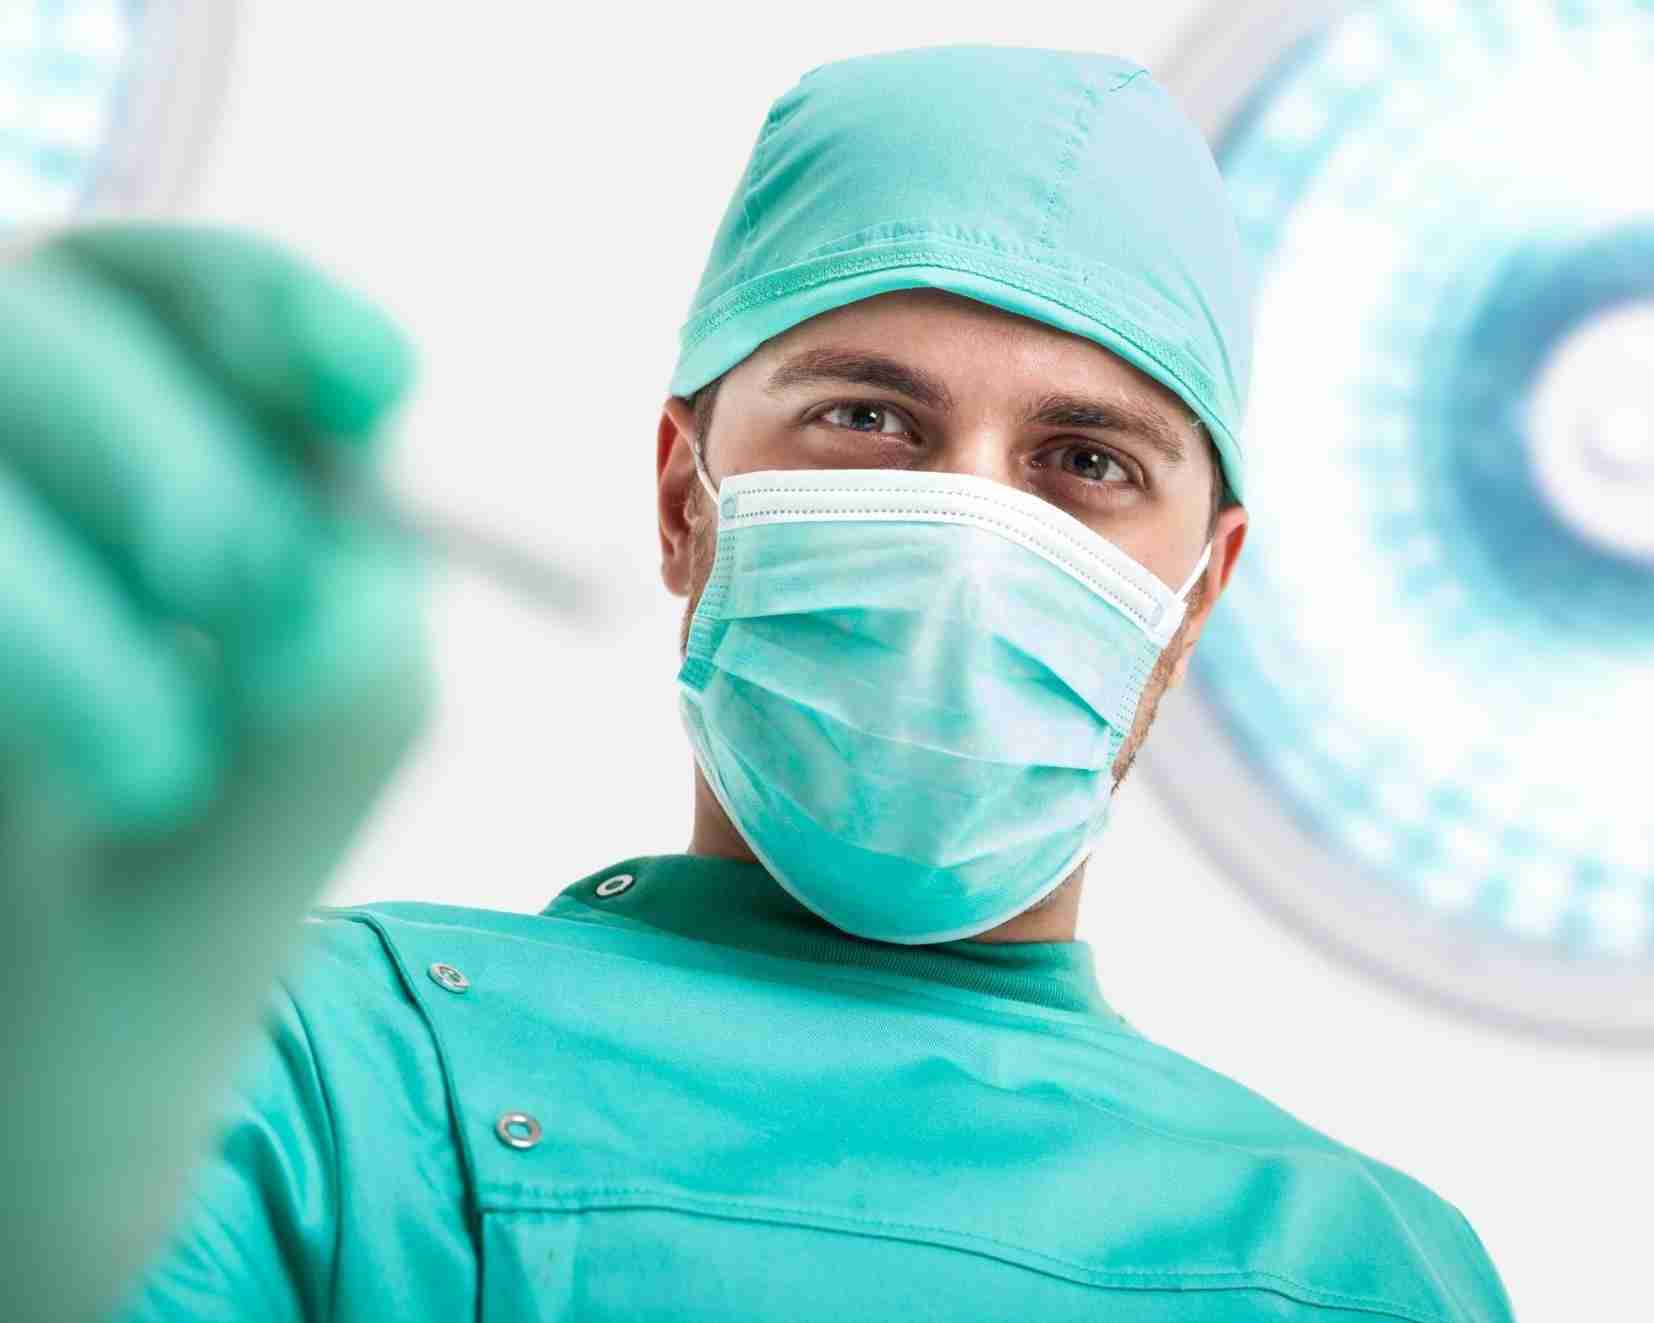 хирургия в Израиле